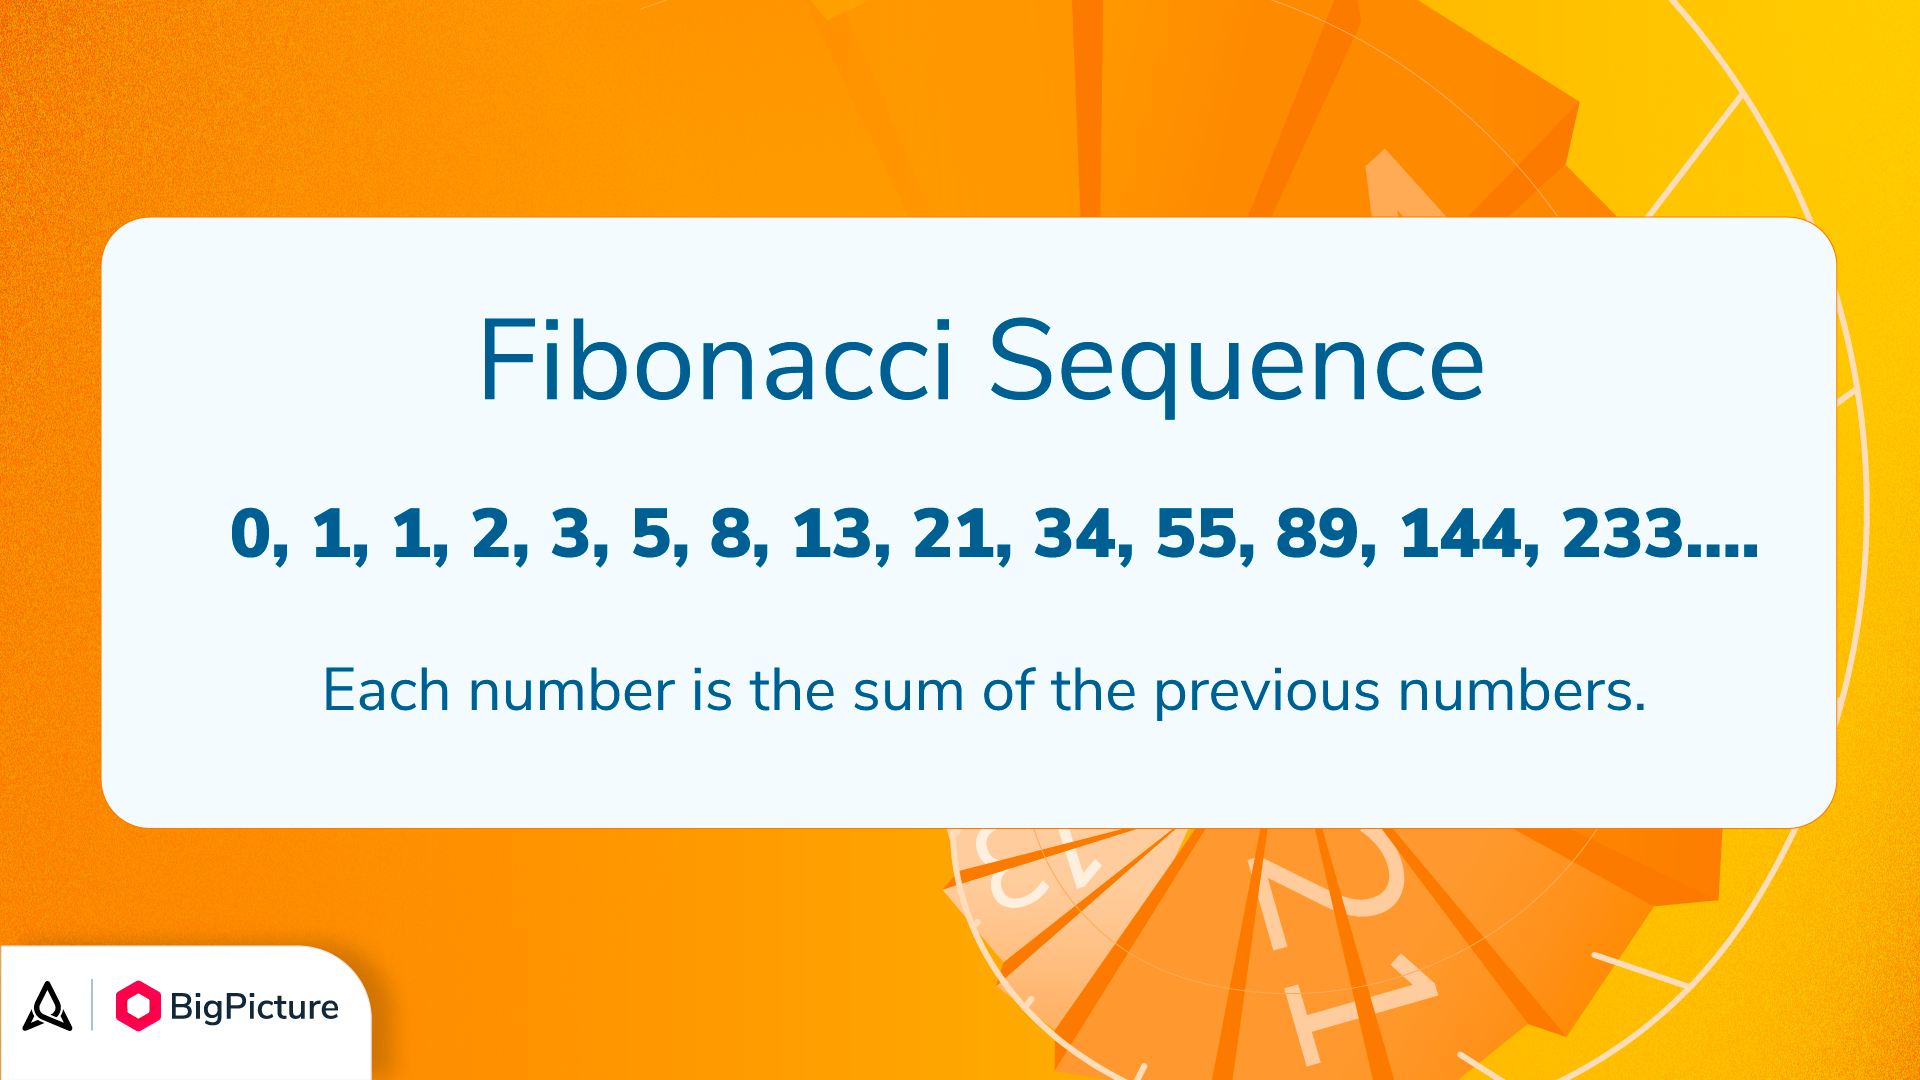 A visual for the Fibonacci sequence.